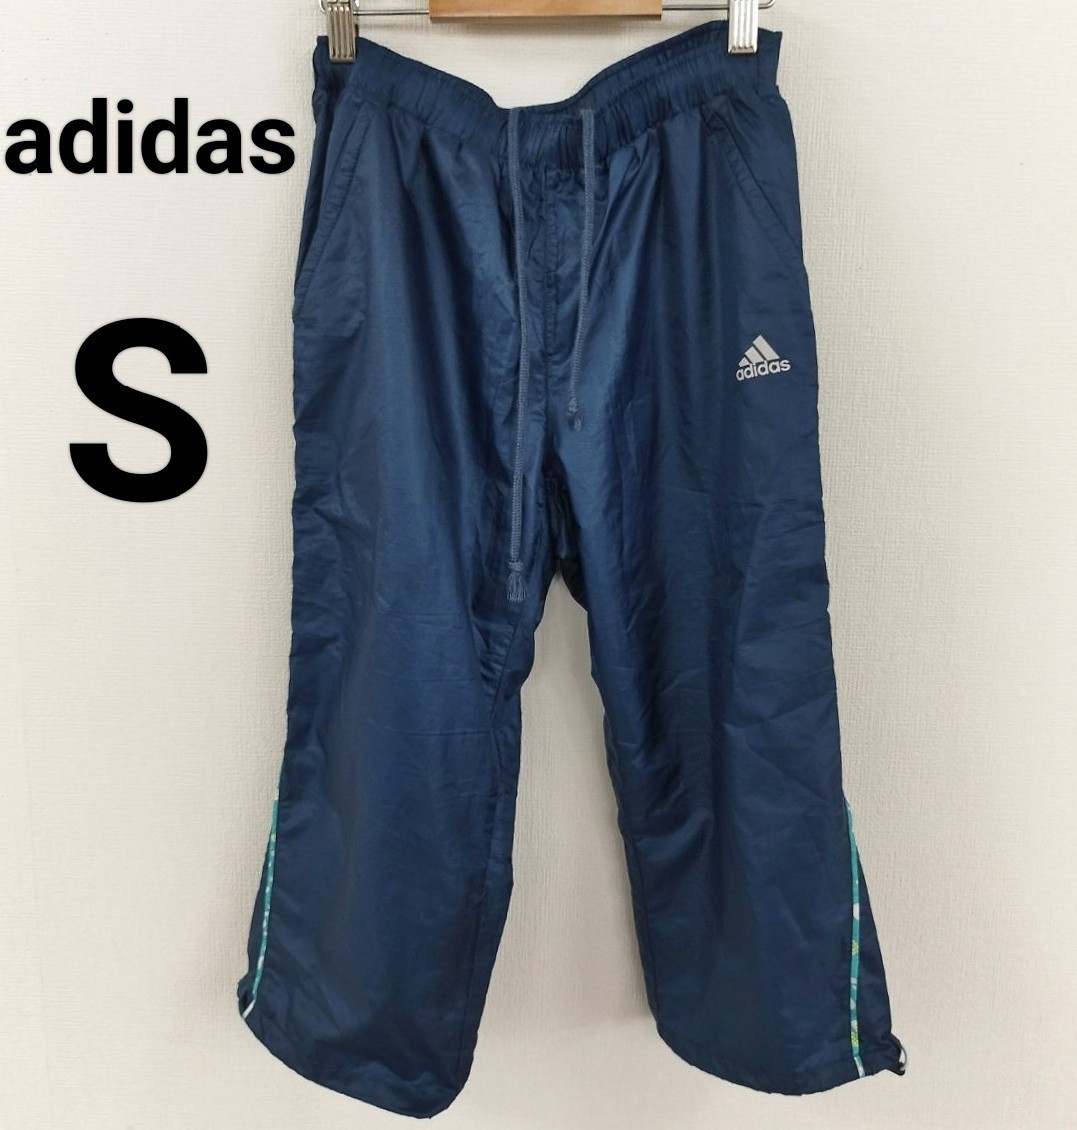 adidas アディダス レディス カプリパンツ S